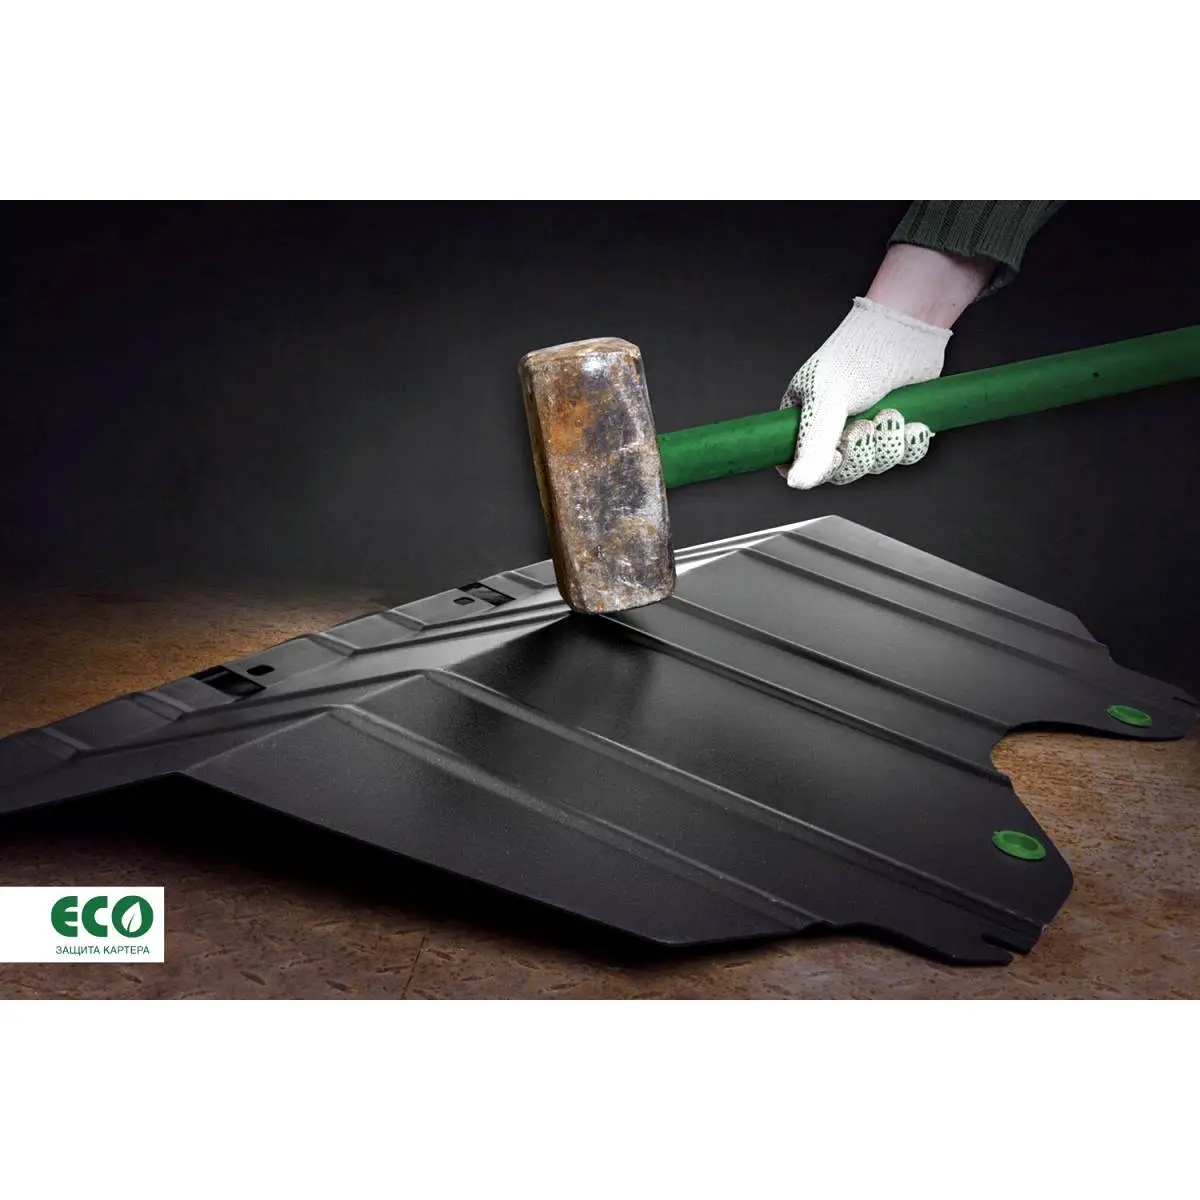 Комплект крепежа защиты радиатора Eco H0I9 LR eco9903322 E1OKY 1437099151 изображение 2